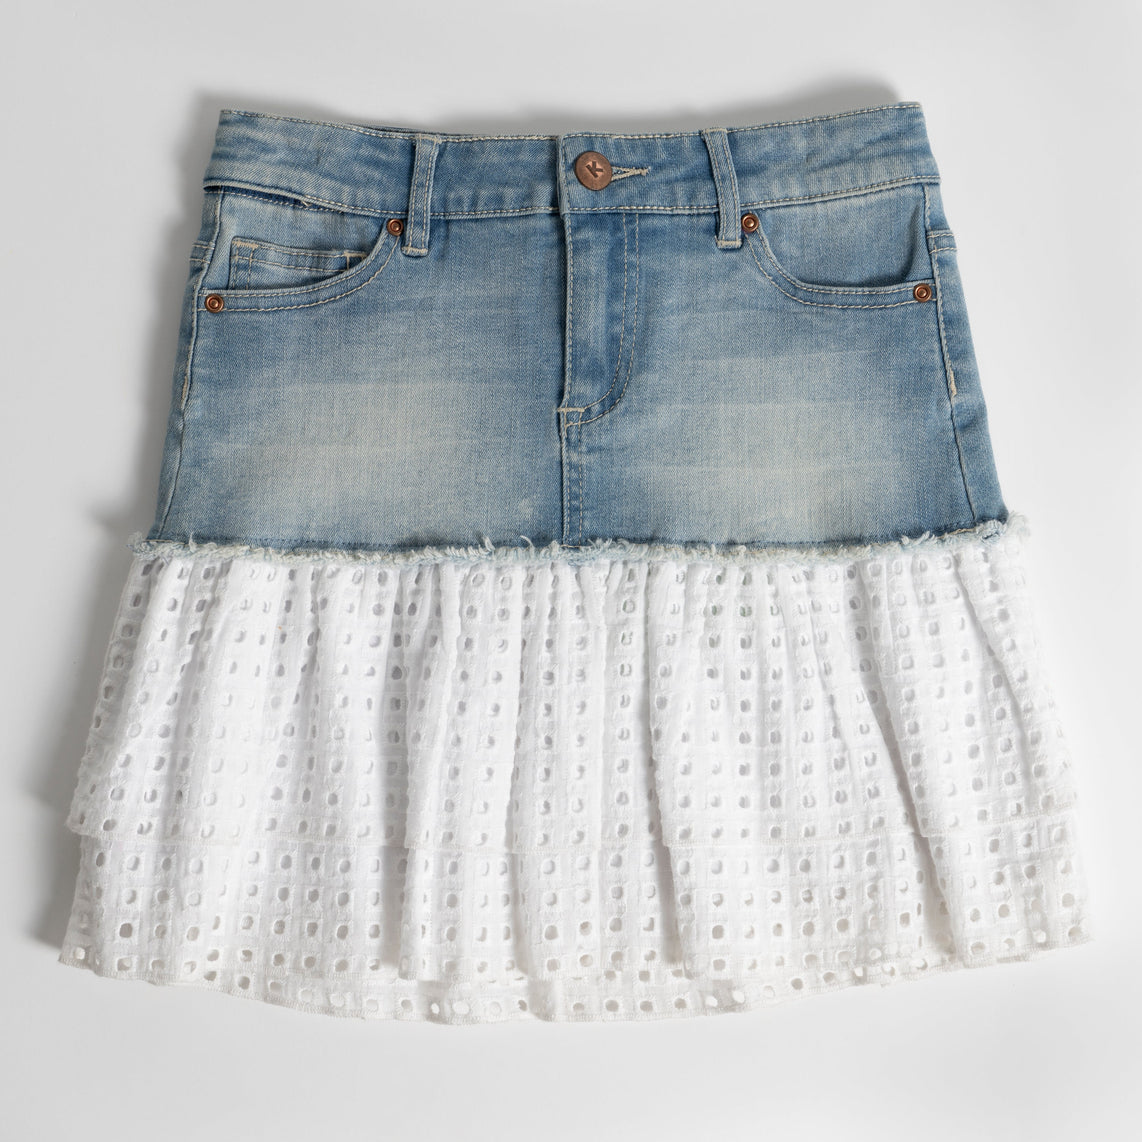 Girl Tiered Skirt in Denim or Linen blends all sizes